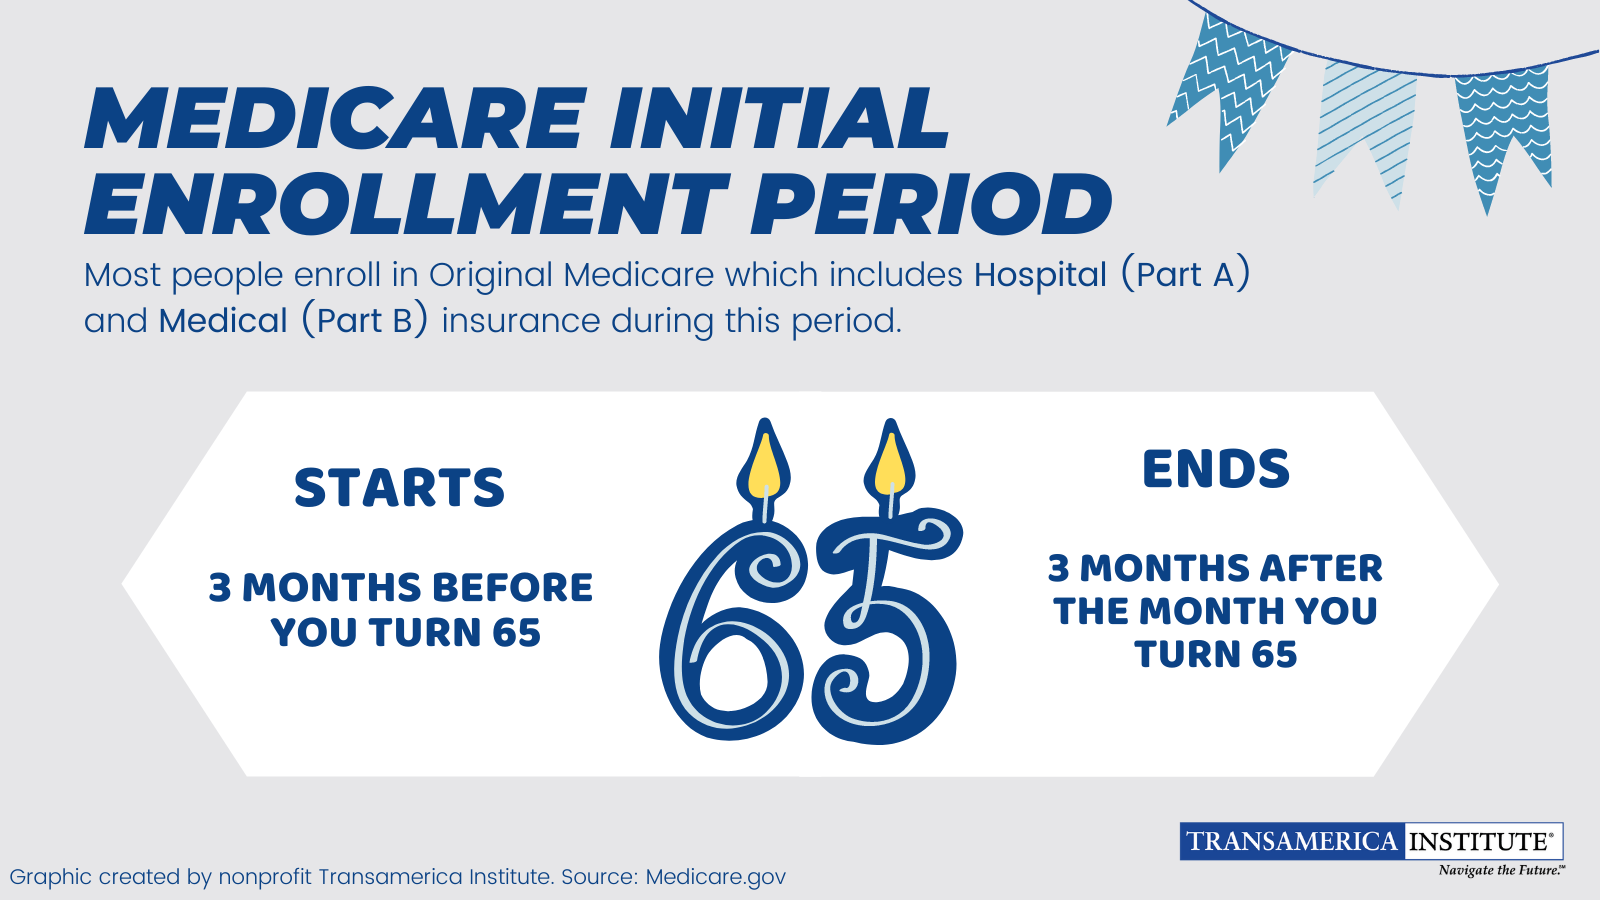 Medicare Initial Enrollment Period